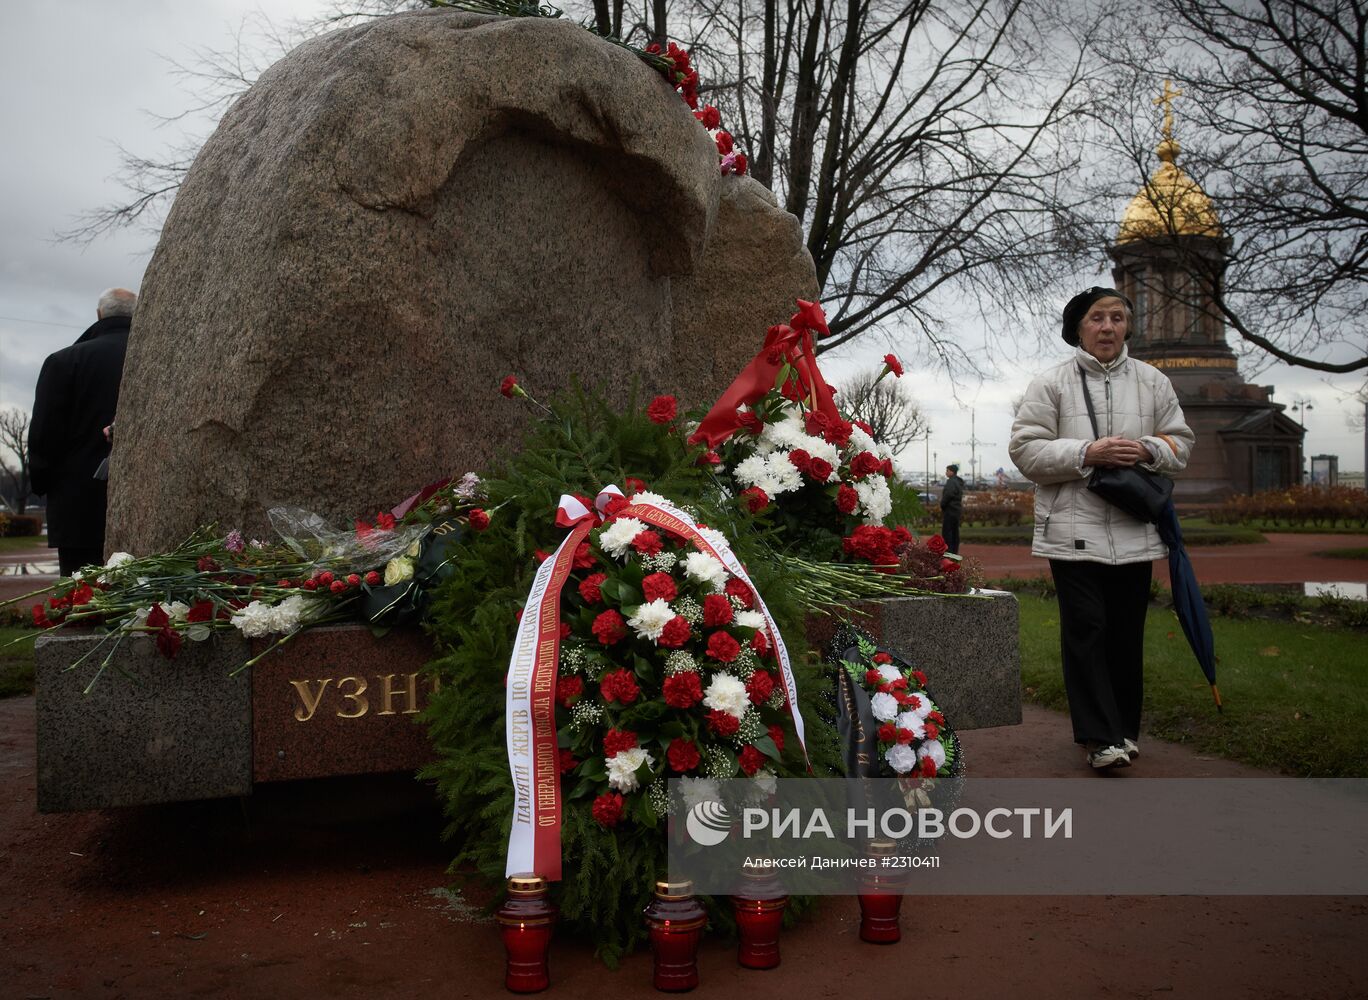 Митинг памяти жертв политических репрессий у Соловецкого камня на Троицкой площади в Петербурге